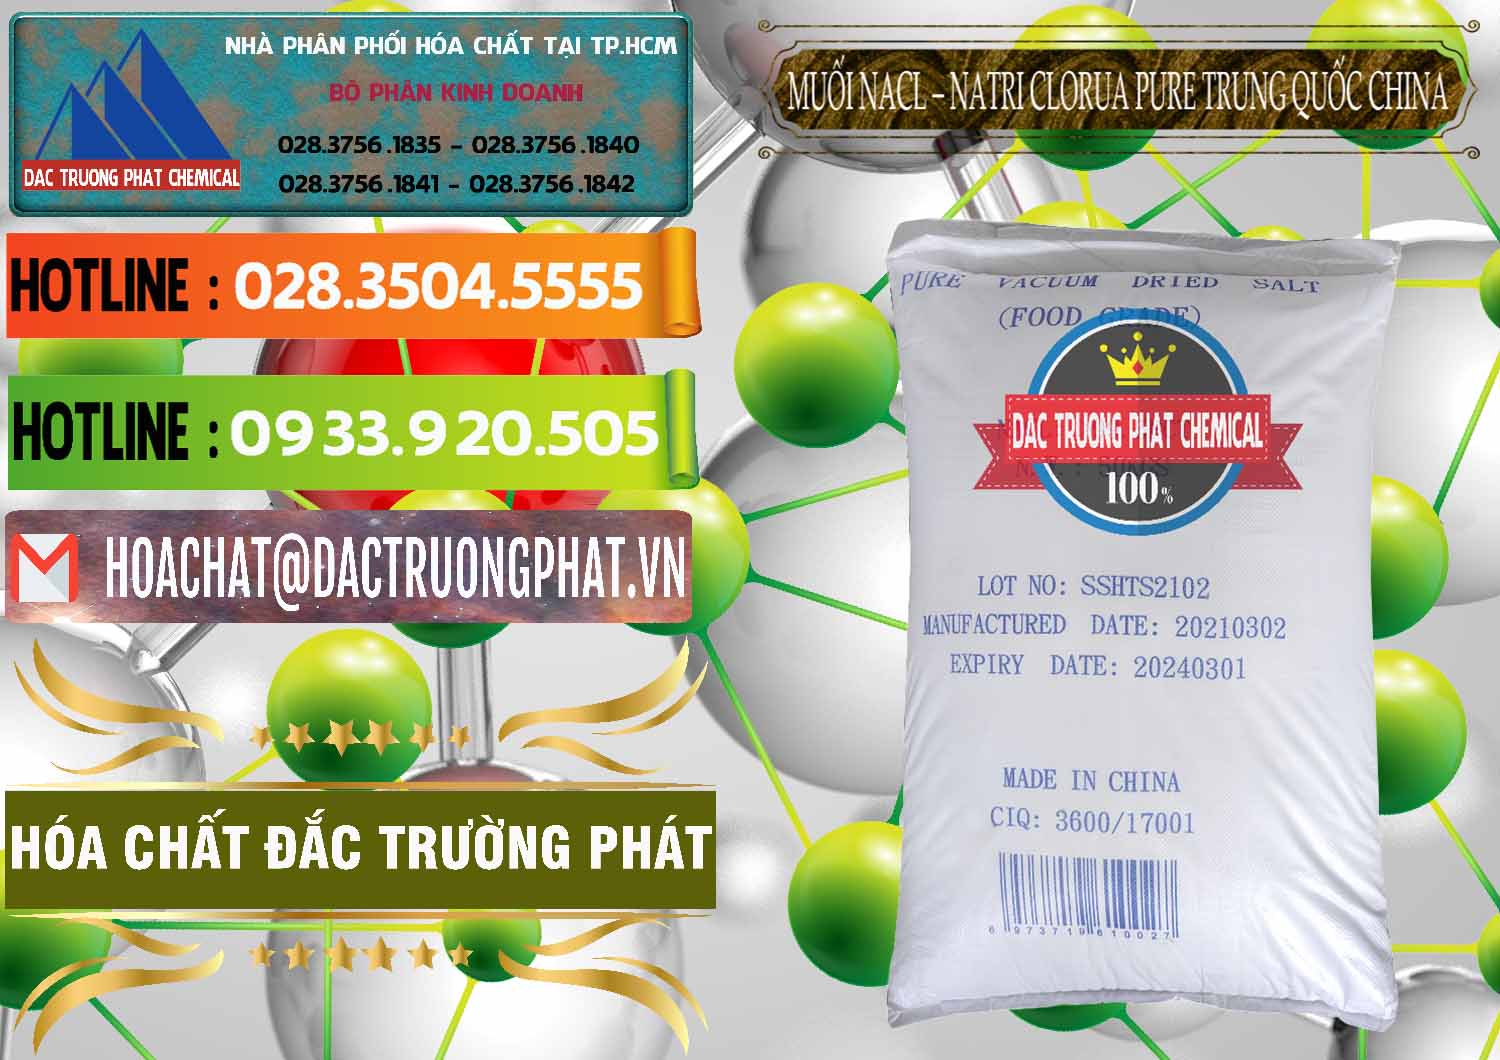 Đơn vị chuyên cung ứng _ bán Muối NaCL – Sodium Chloride Pure Trung Quốc China - 0230 - Nơi chuyên phân phối và nhập khẩu hóa chất tại TP.HCM - cungcaphoachat.com.vn